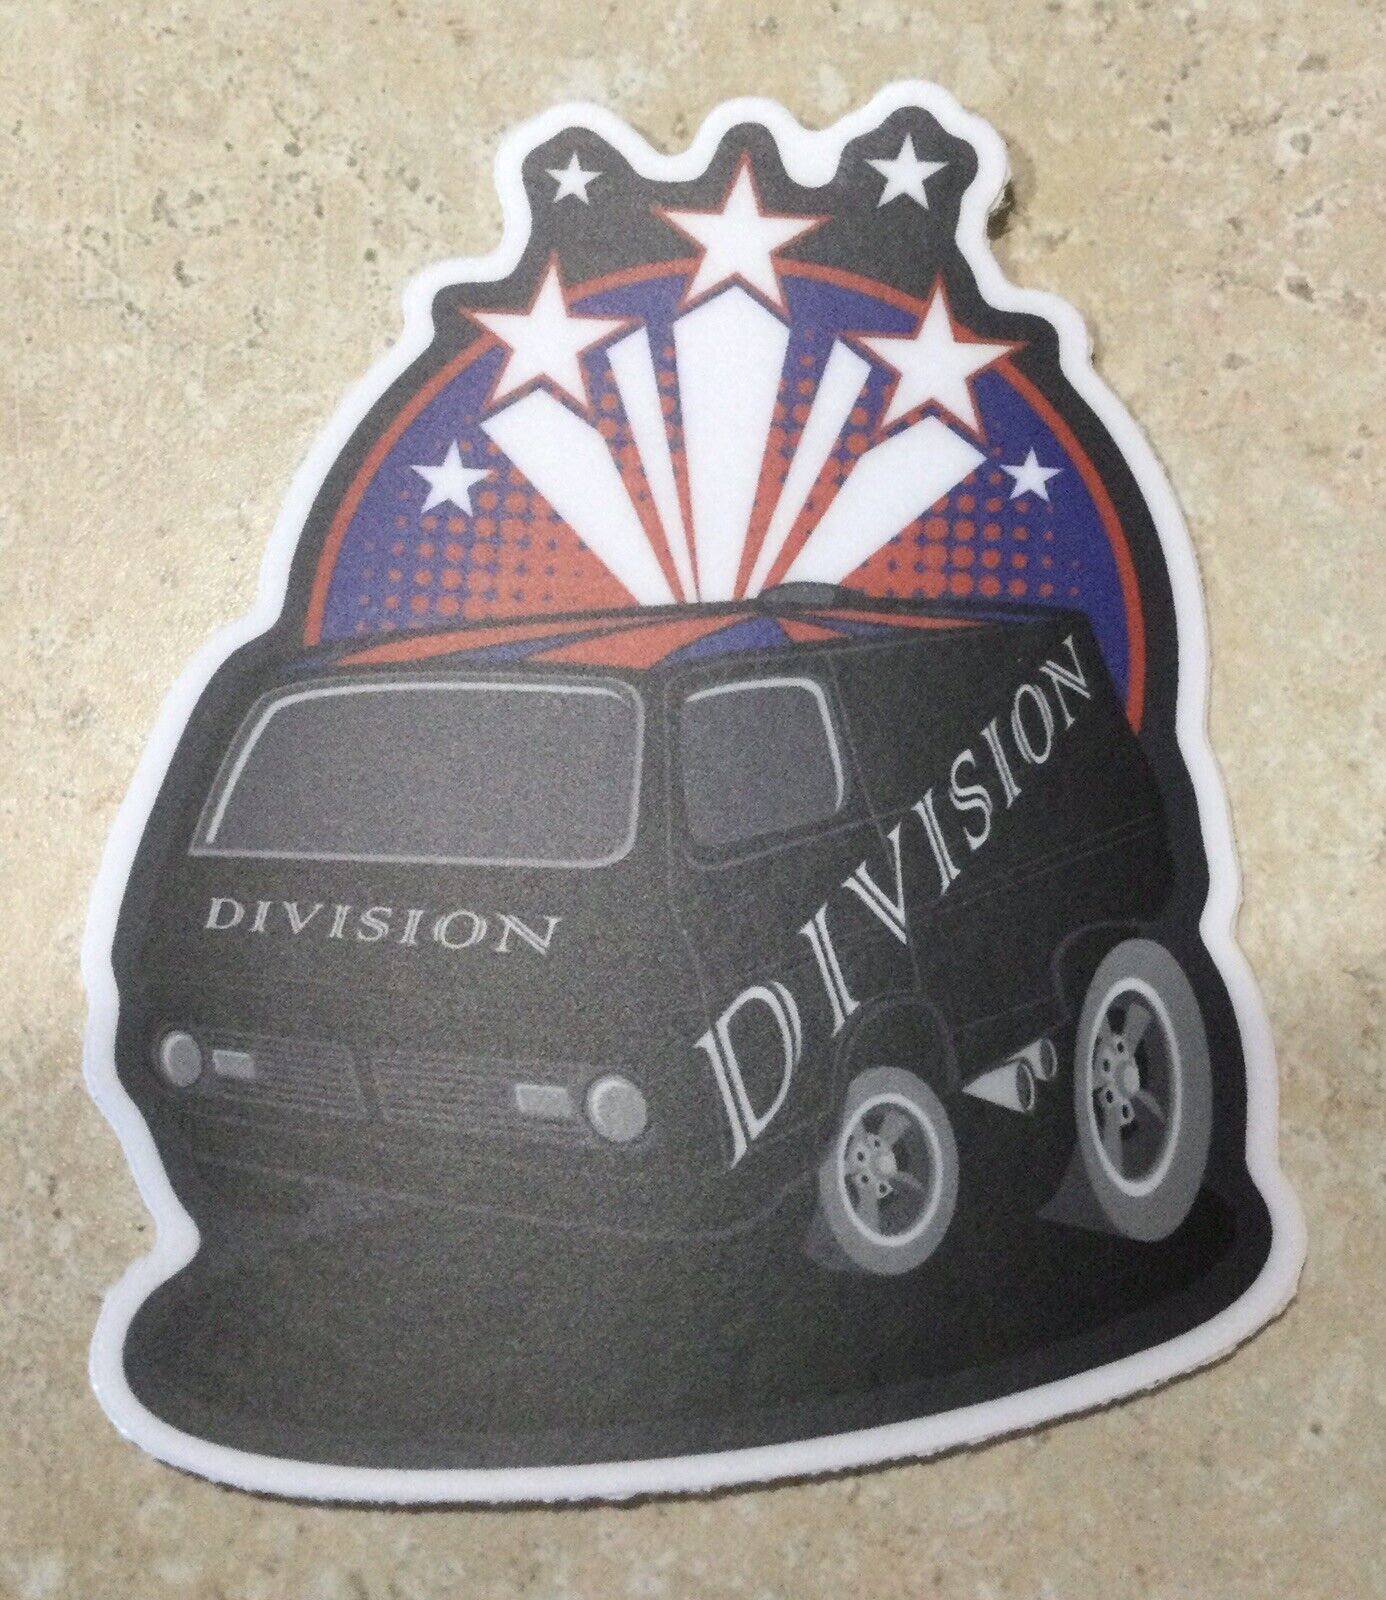 Division Brewing Company Sticker Brewery Micro Beer Arlington Texas Dallas Van